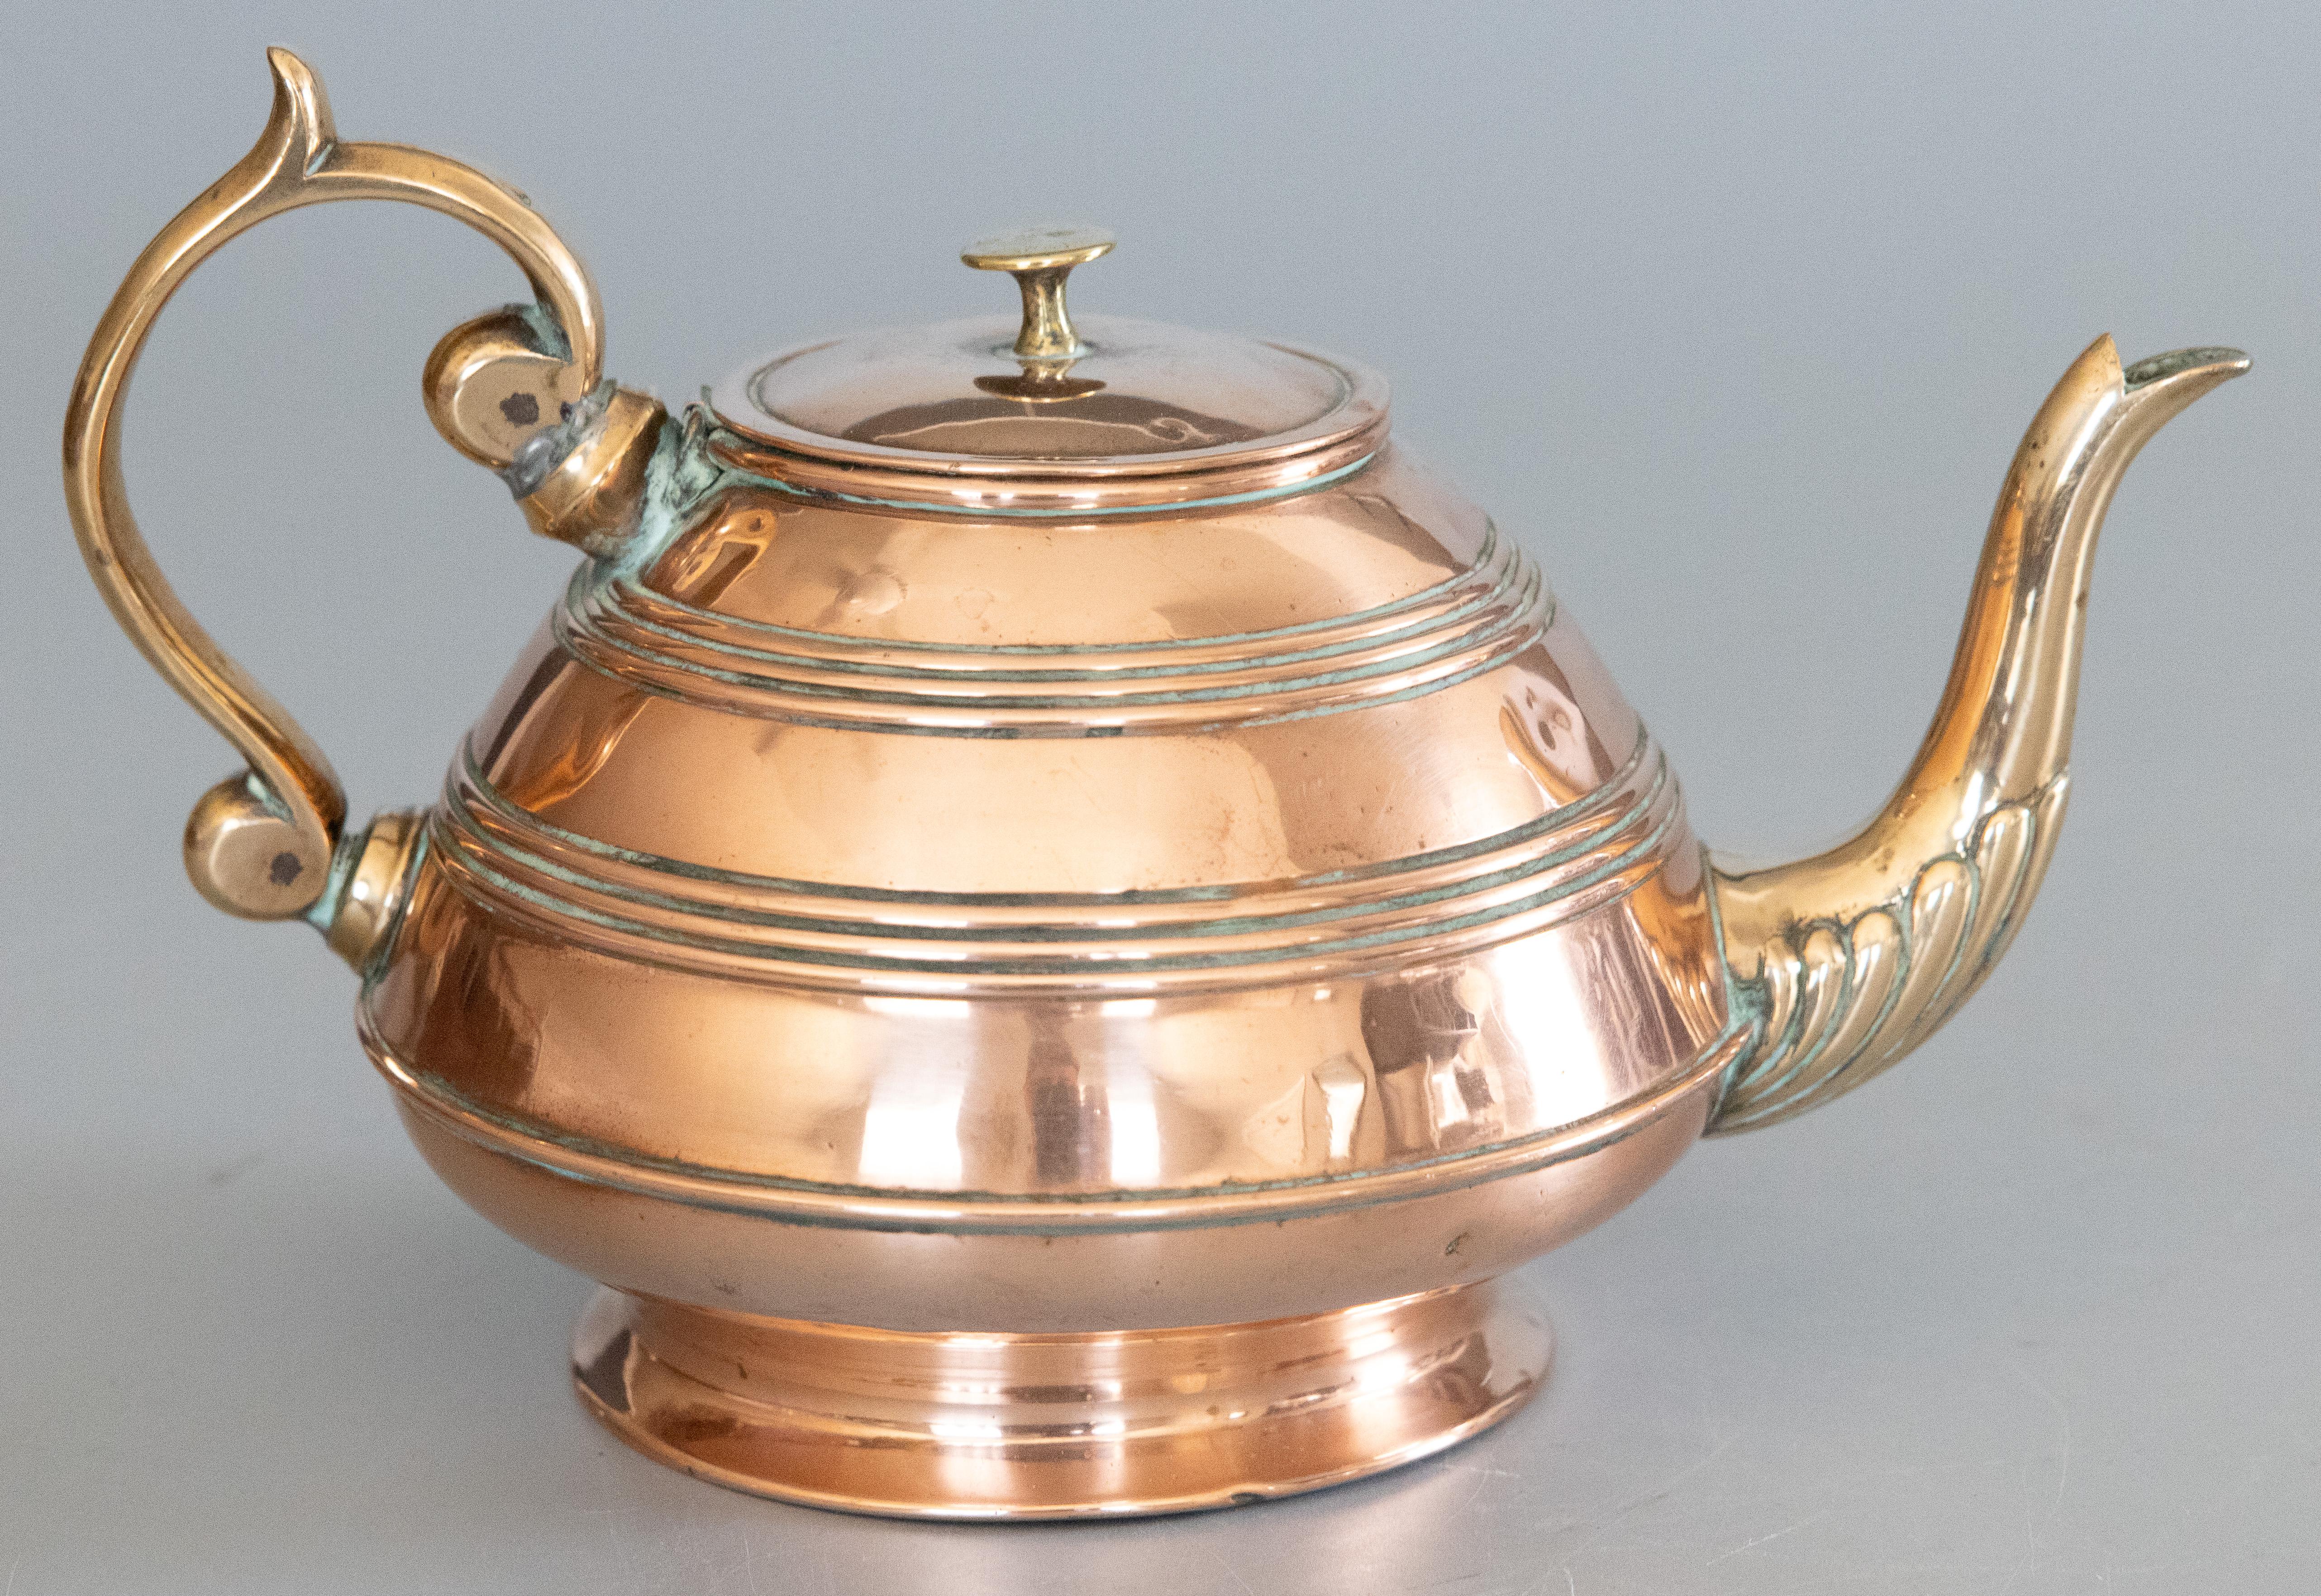 Ein schöner antiker englischer Teekessel oder eine Teekanne im Jugendstil aus Kupfer und Messing von Soutter & Sons, um 1890. Diese feine Teekanne hat einen handgefertigten Kupferkörper mit Messinggriff und -ausguss in einer schönen Patina. Es wäre